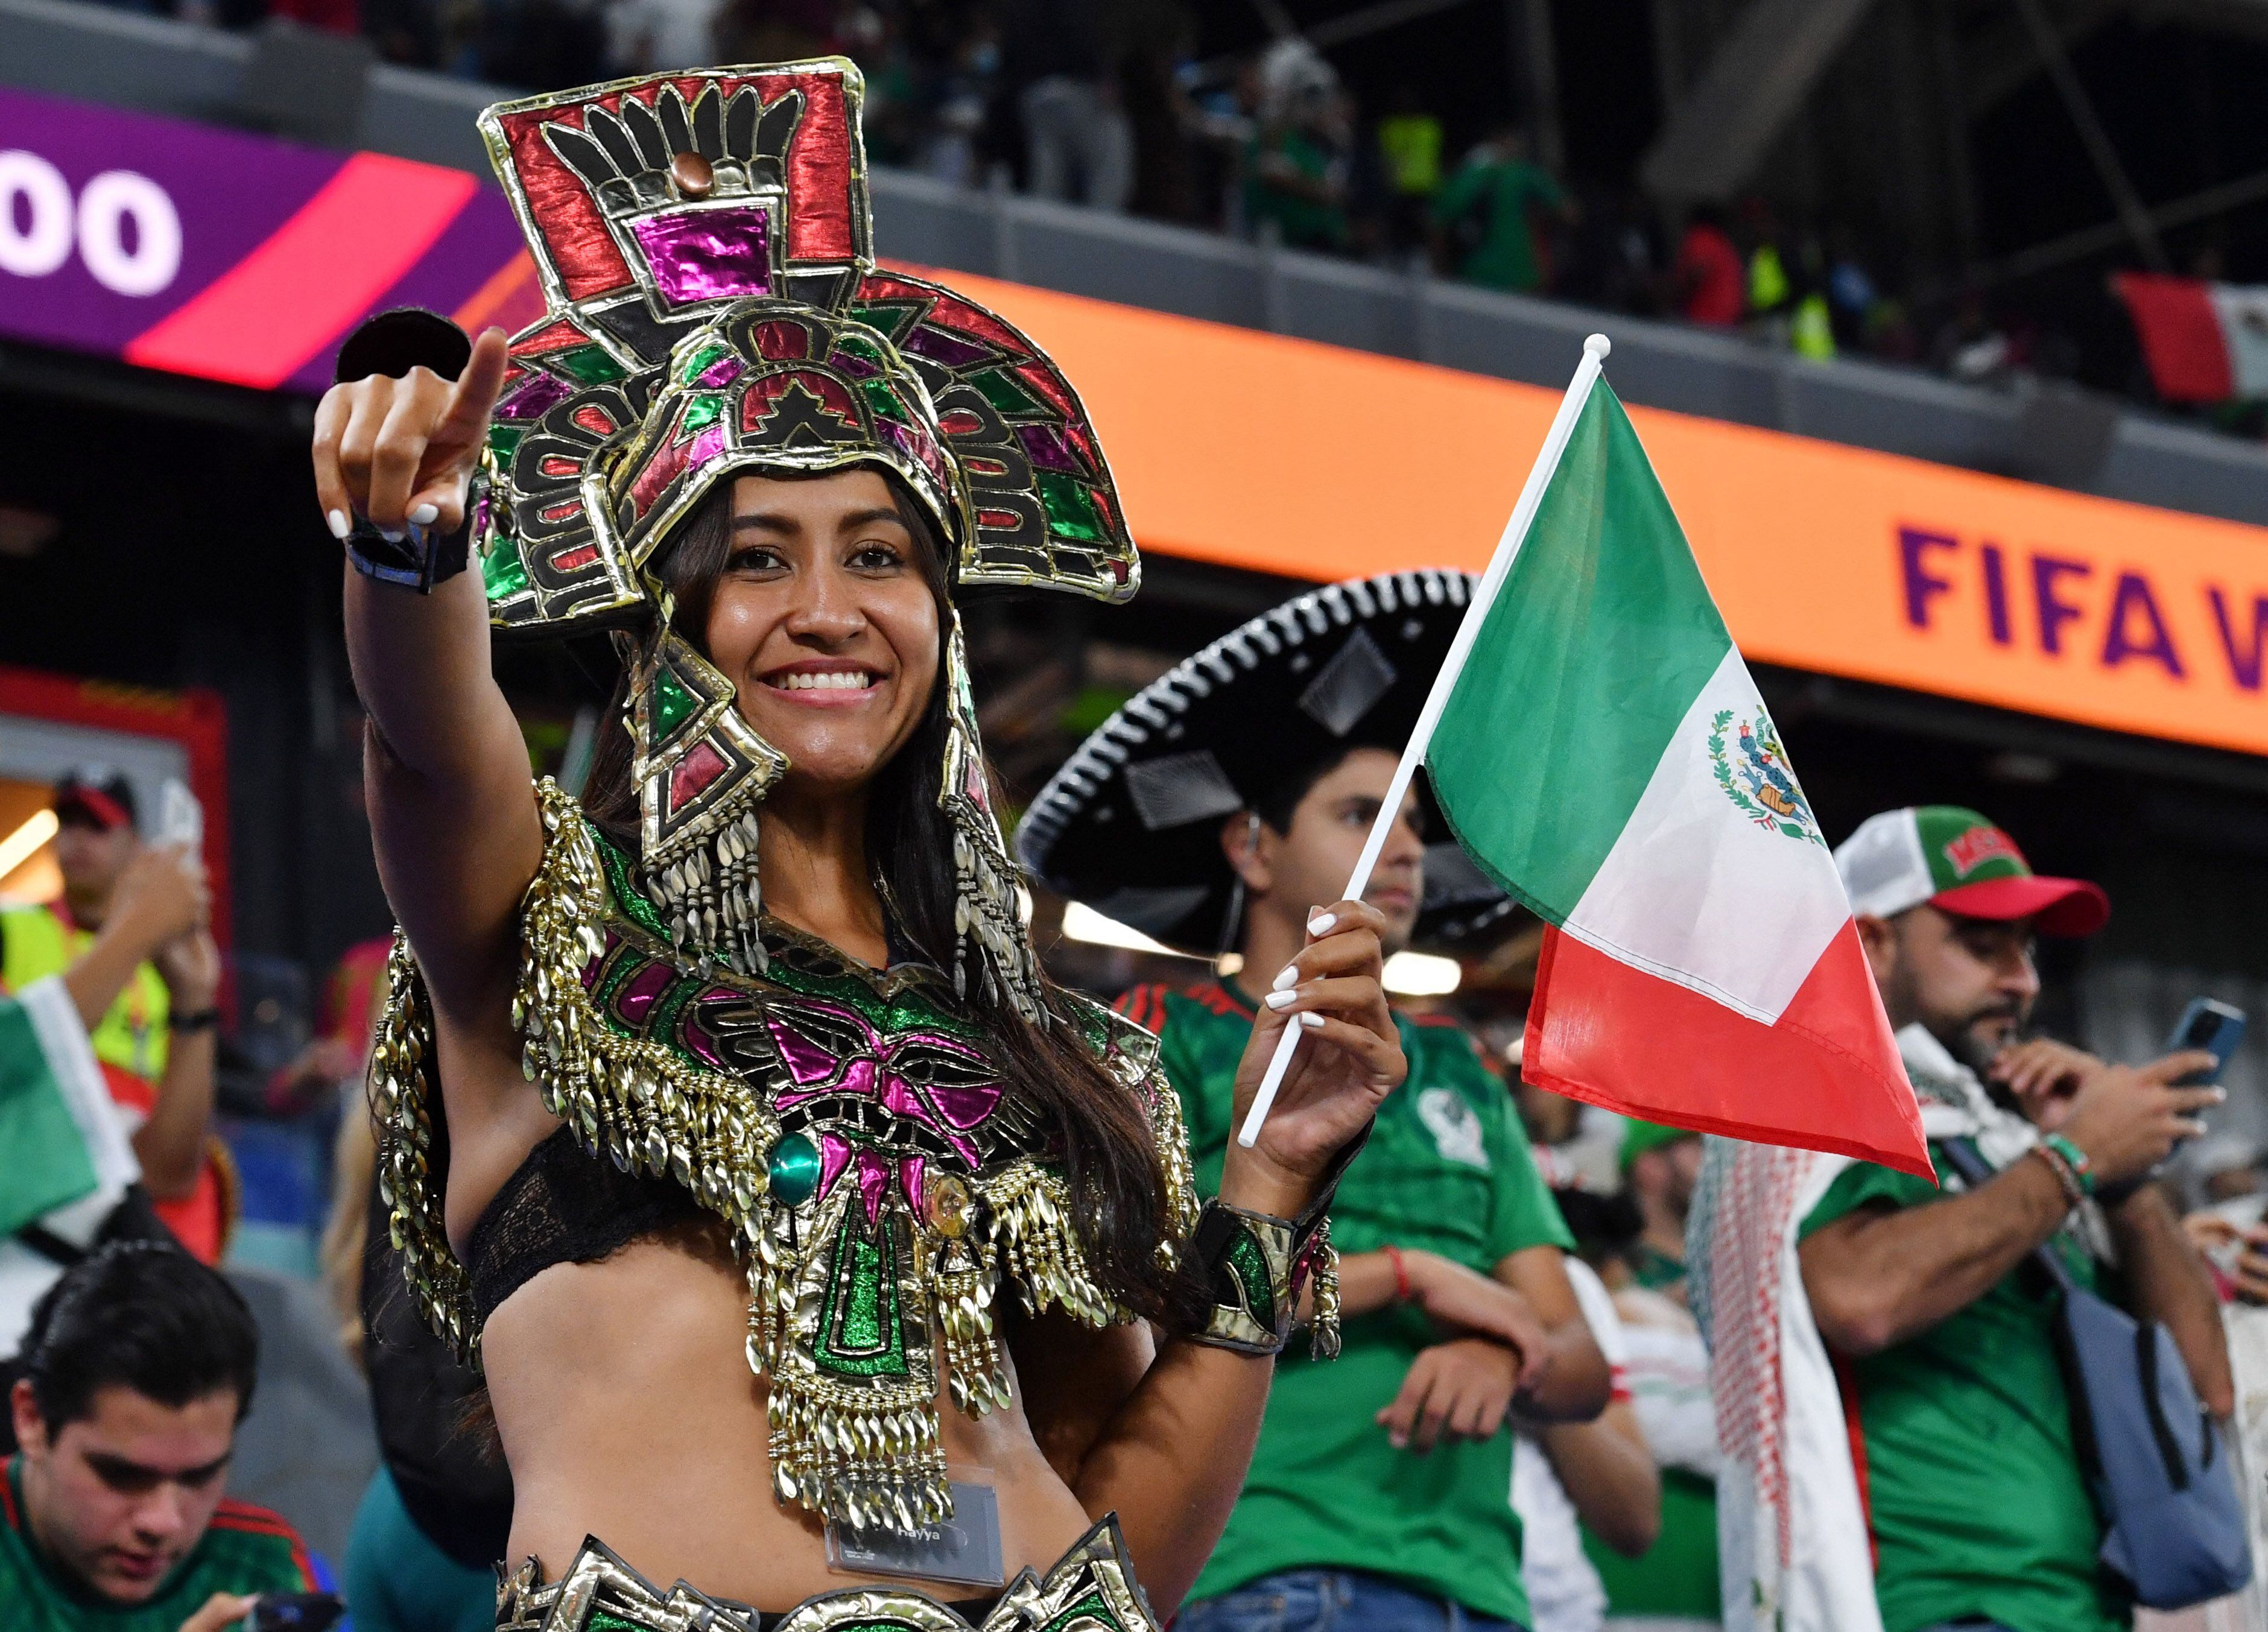 La delegación mexicana en Qatar es de las más numerosas con motivo de la Copa del Mundo (REUTERS/Jennifer Lorenzini)